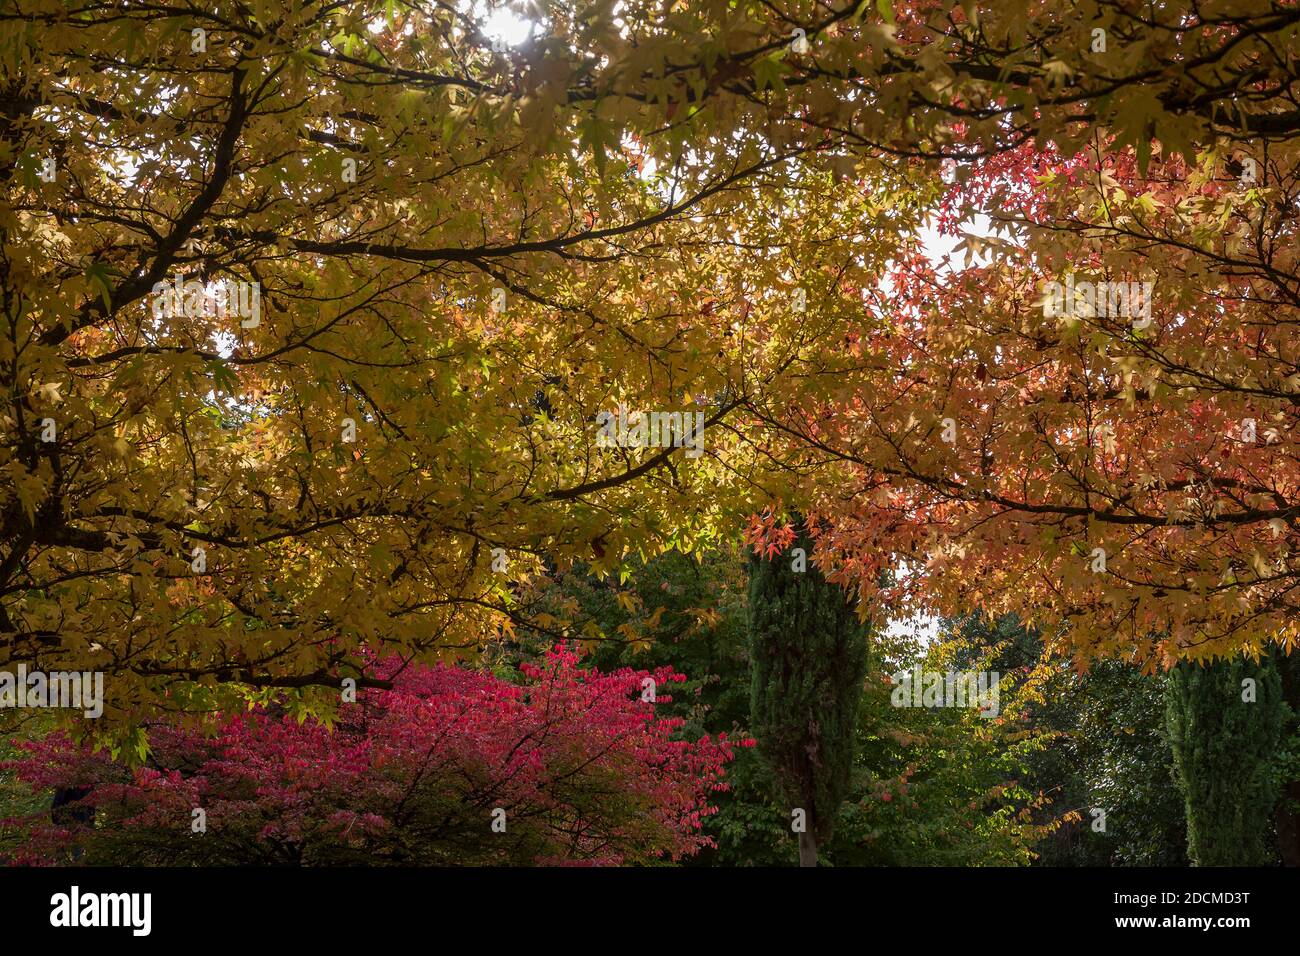 Glorieuse couleur d'automne dans les jardins du château, Arundel, West Sussex, Angleterre, Royaume-Uni: Sucrine américaine (Liquidambar styraciflua) en premier plan Banque D'Images